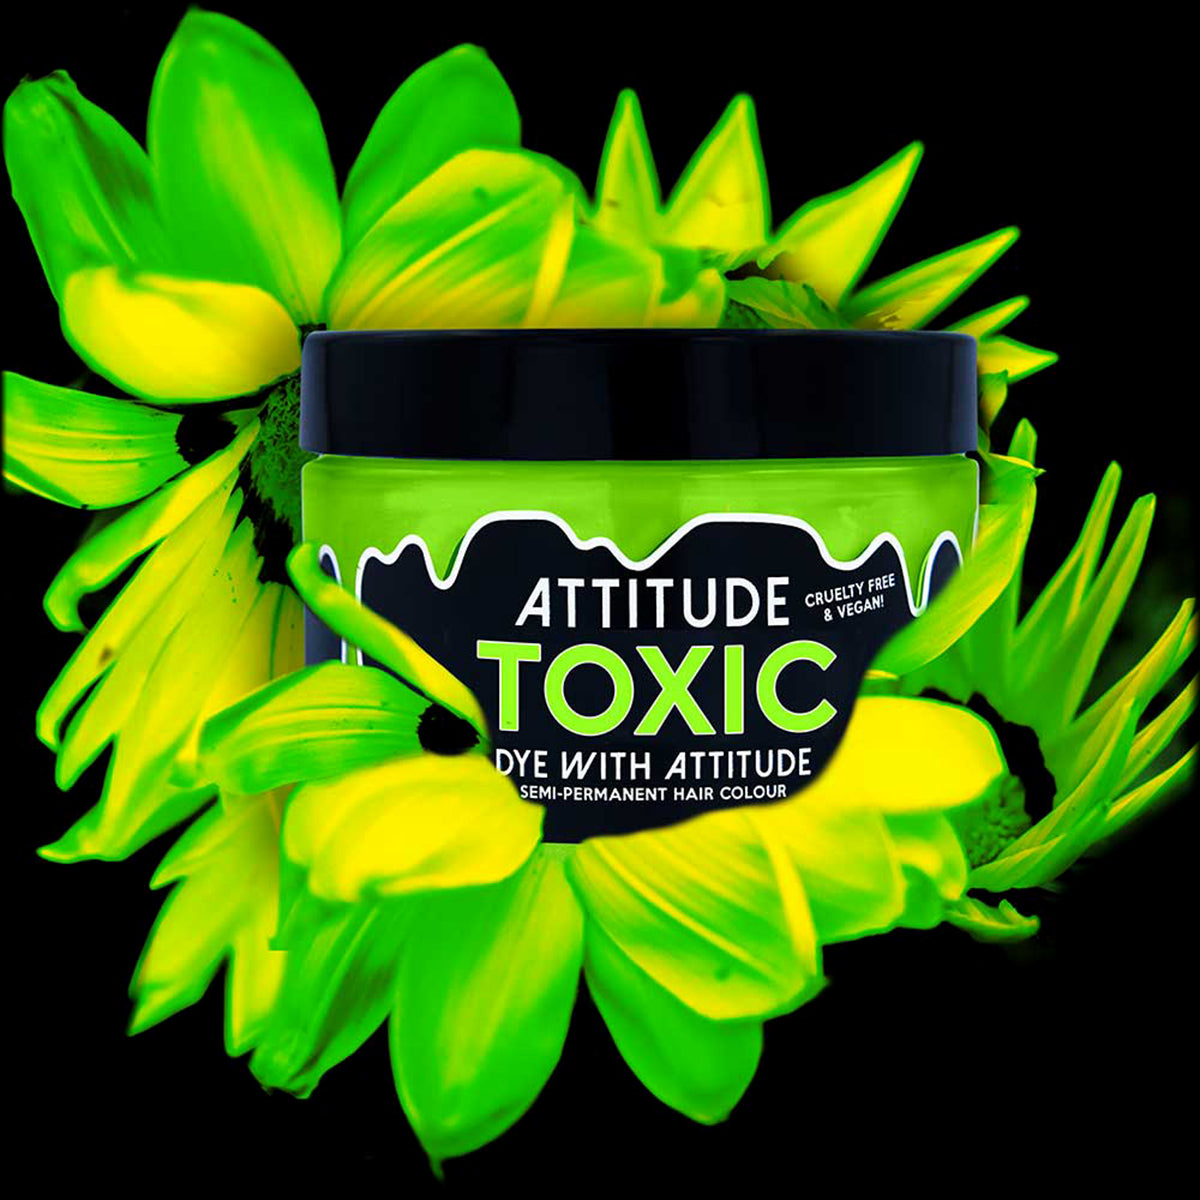 TOXIC UV GREEN - Attitude Haarfärbemittel - 135ml